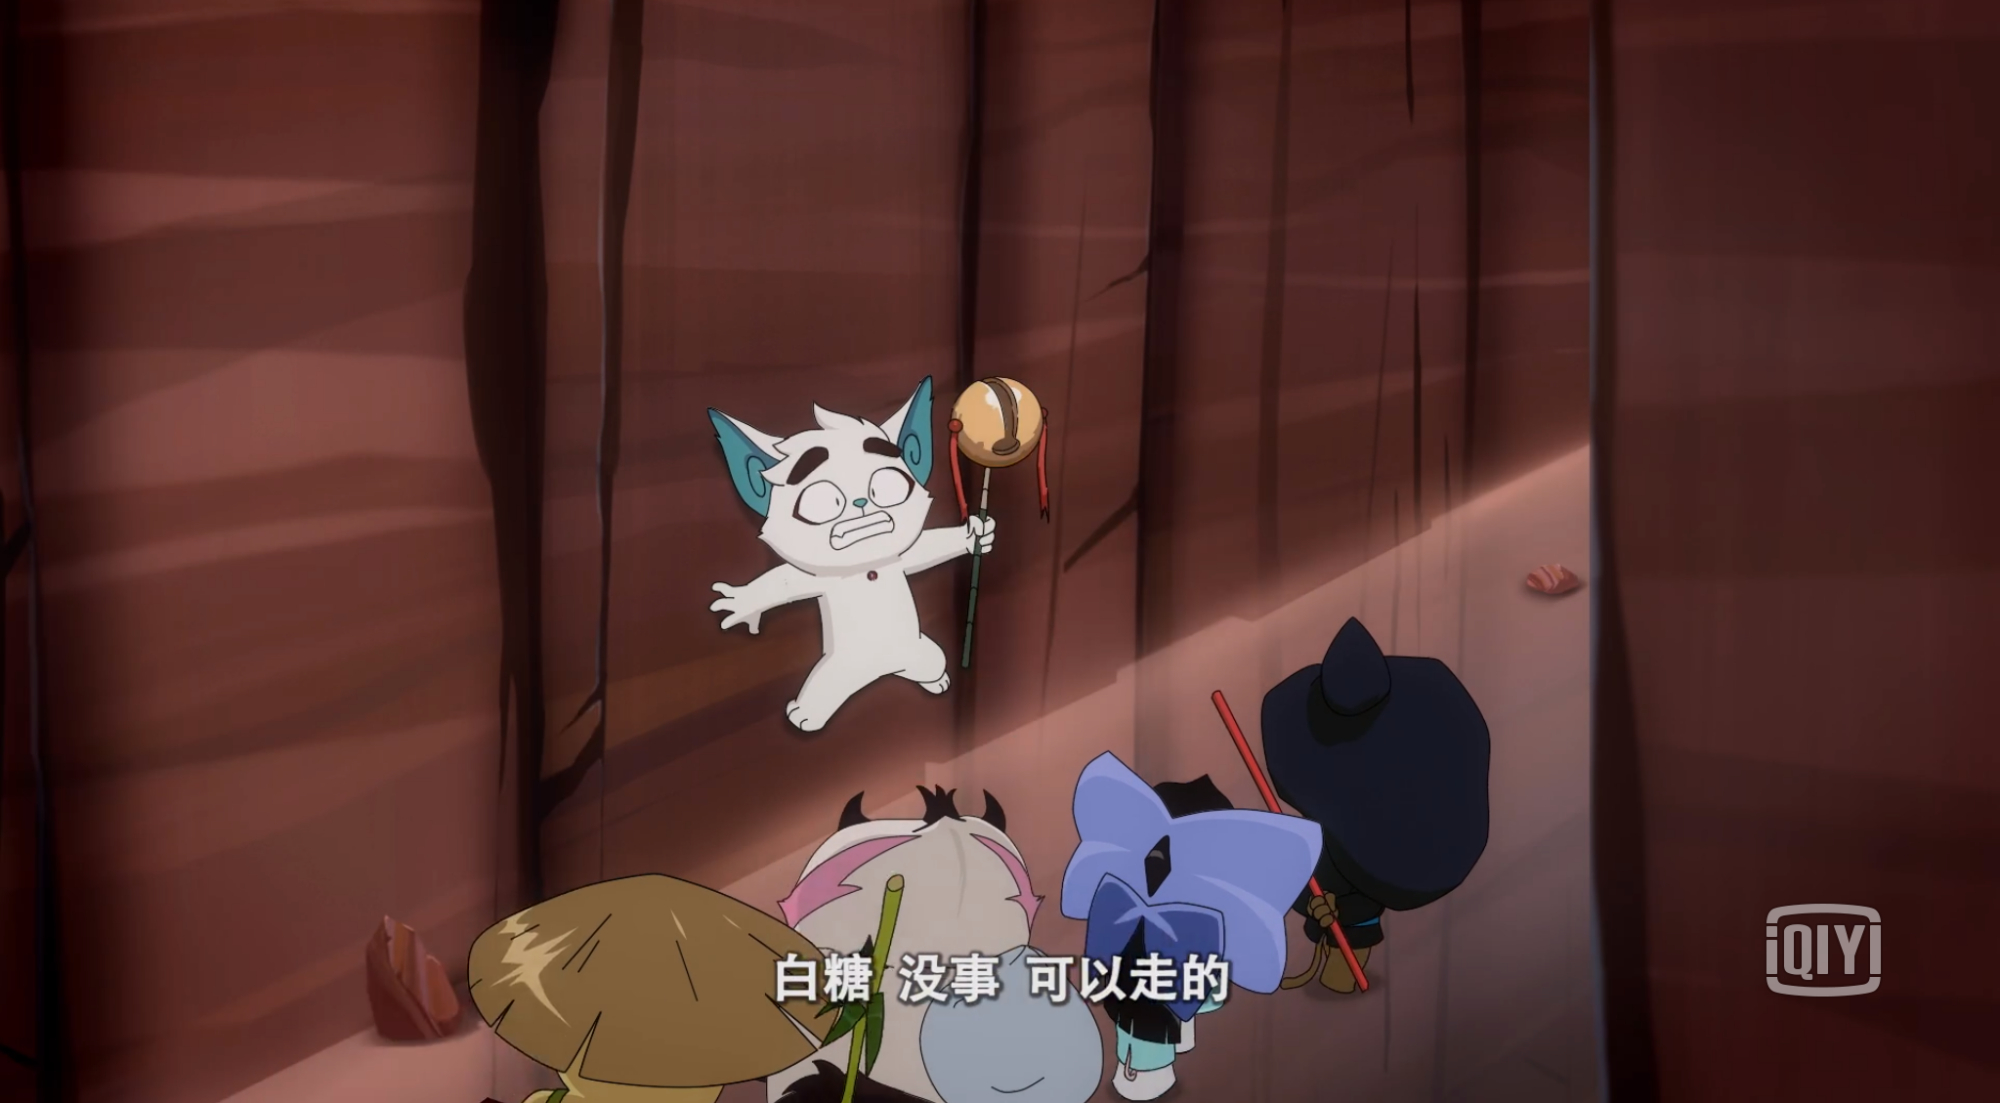 京剧猫:白糖有三个外号,"丸子"只是其中一个,"屁精"最